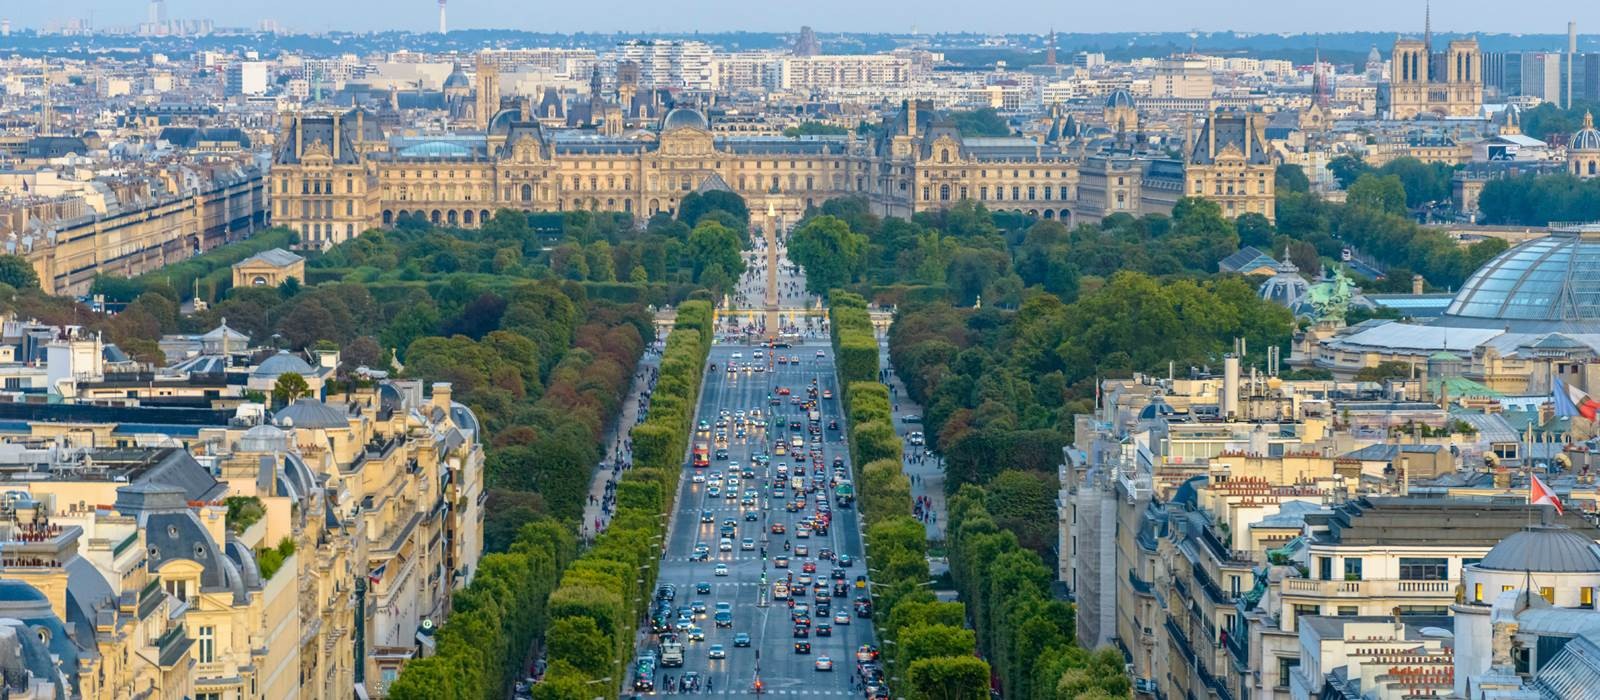 Champs-Elysées - đại lộ nổi danh của Paris hoa lệ